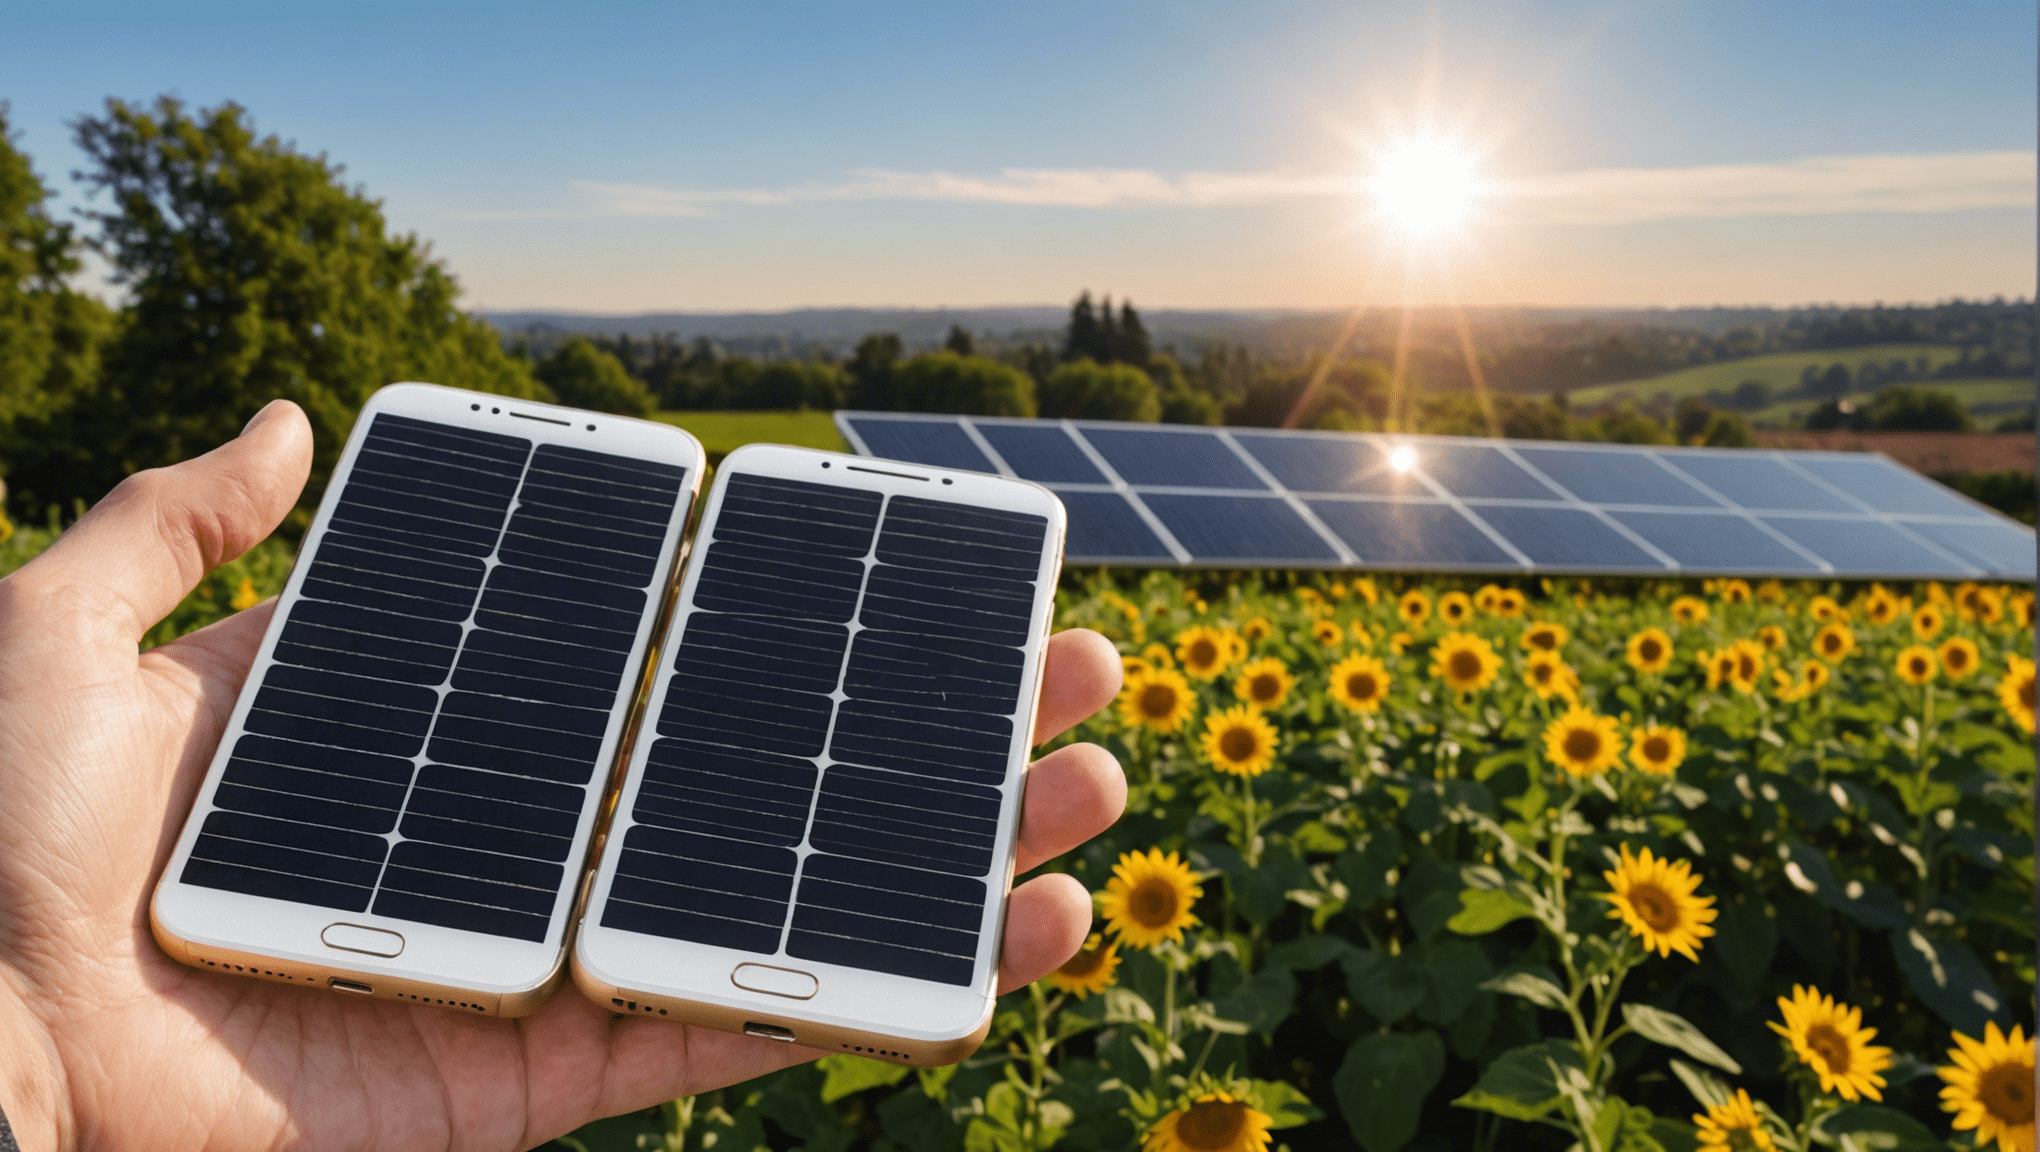 découvrez comment connecter facilement vos panneaux solaires à votre smartphone et profiter de l'énergie solaire où que vous soyez.